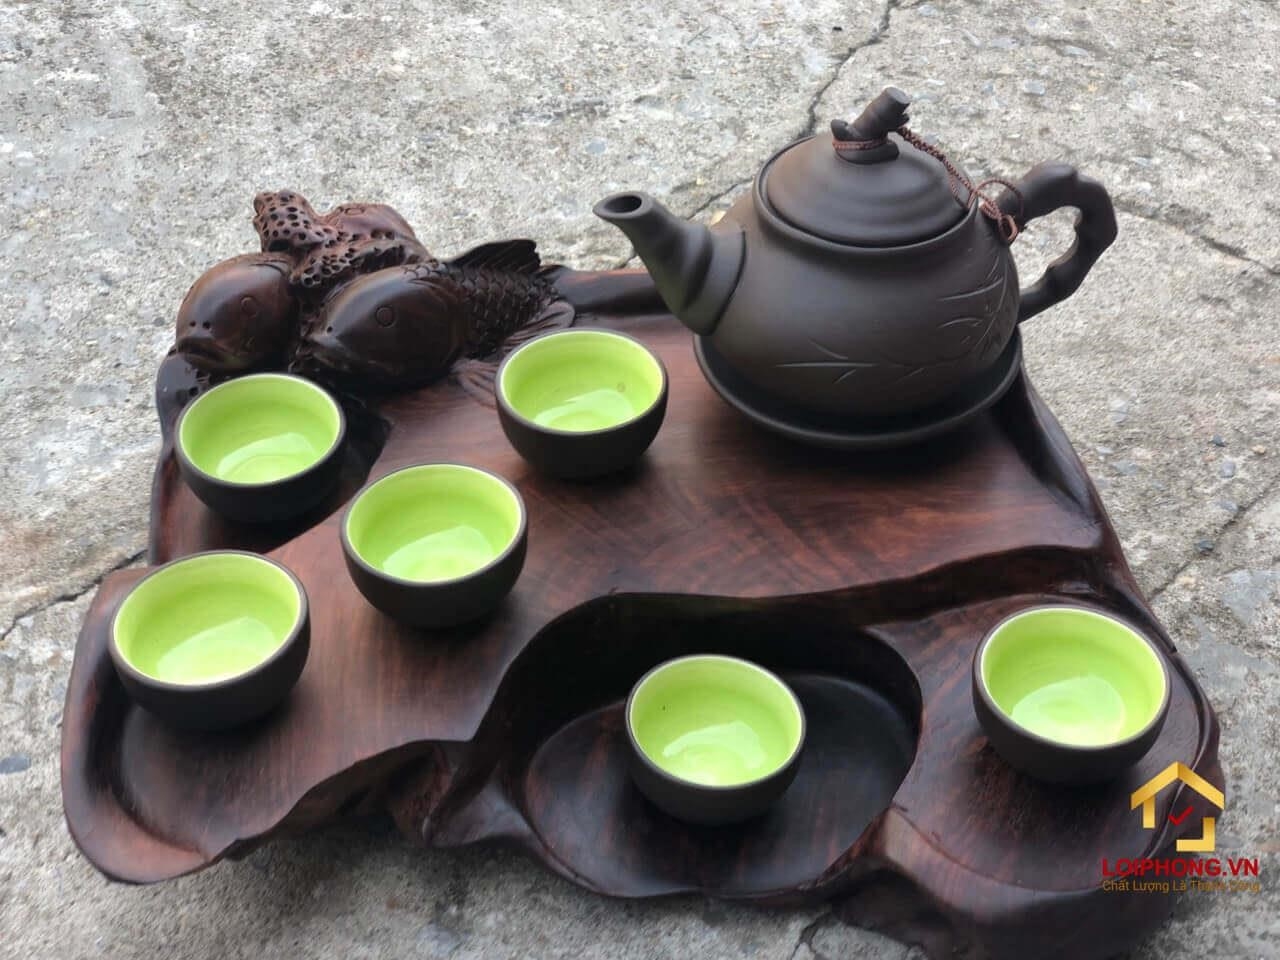 Khay trà gỗ nguyên khối là một món đồ trang trí rất đẹp và sang trọng. Chúng được làm từ một khối gỗ duy nhất và có độ bền cao. Khay trà này thường được dùng để đựng tách trà và các phụ kiện đi kèm khi sử dụng trà. Ngoài ra, nó còn có thể được sử dụng để trang trí nội thất hoặc làm quà tặng cho người thân và bạn bè.